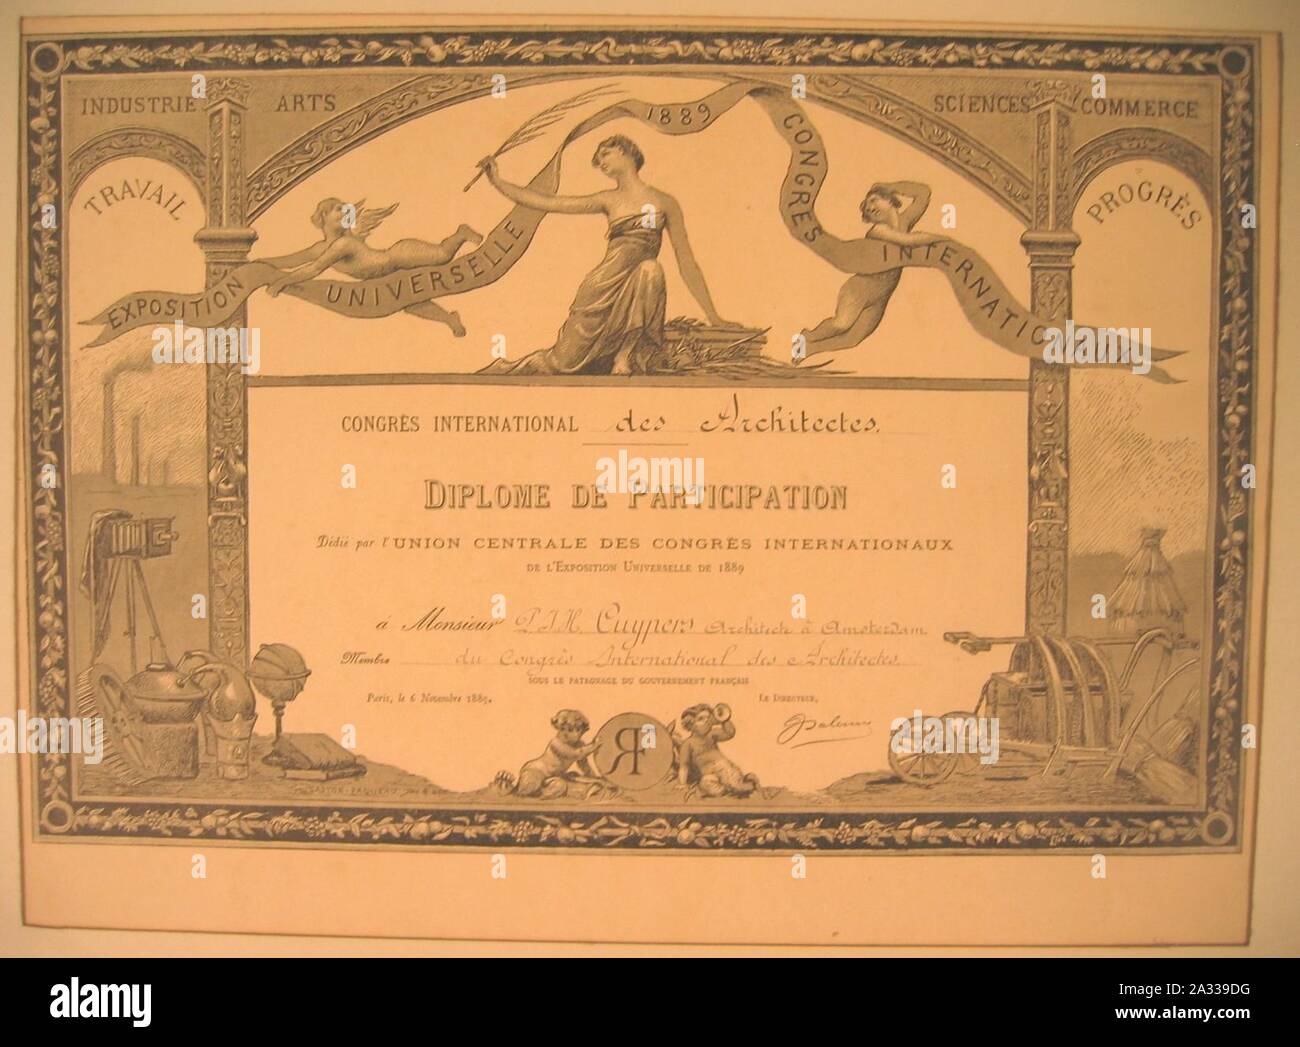 Exposition Universelle 1889 Congrès Internationaux - Diplôme de participation dédié à Monsieur P.J.H. Cuypers Cuypershuis 0506. Stockfoto